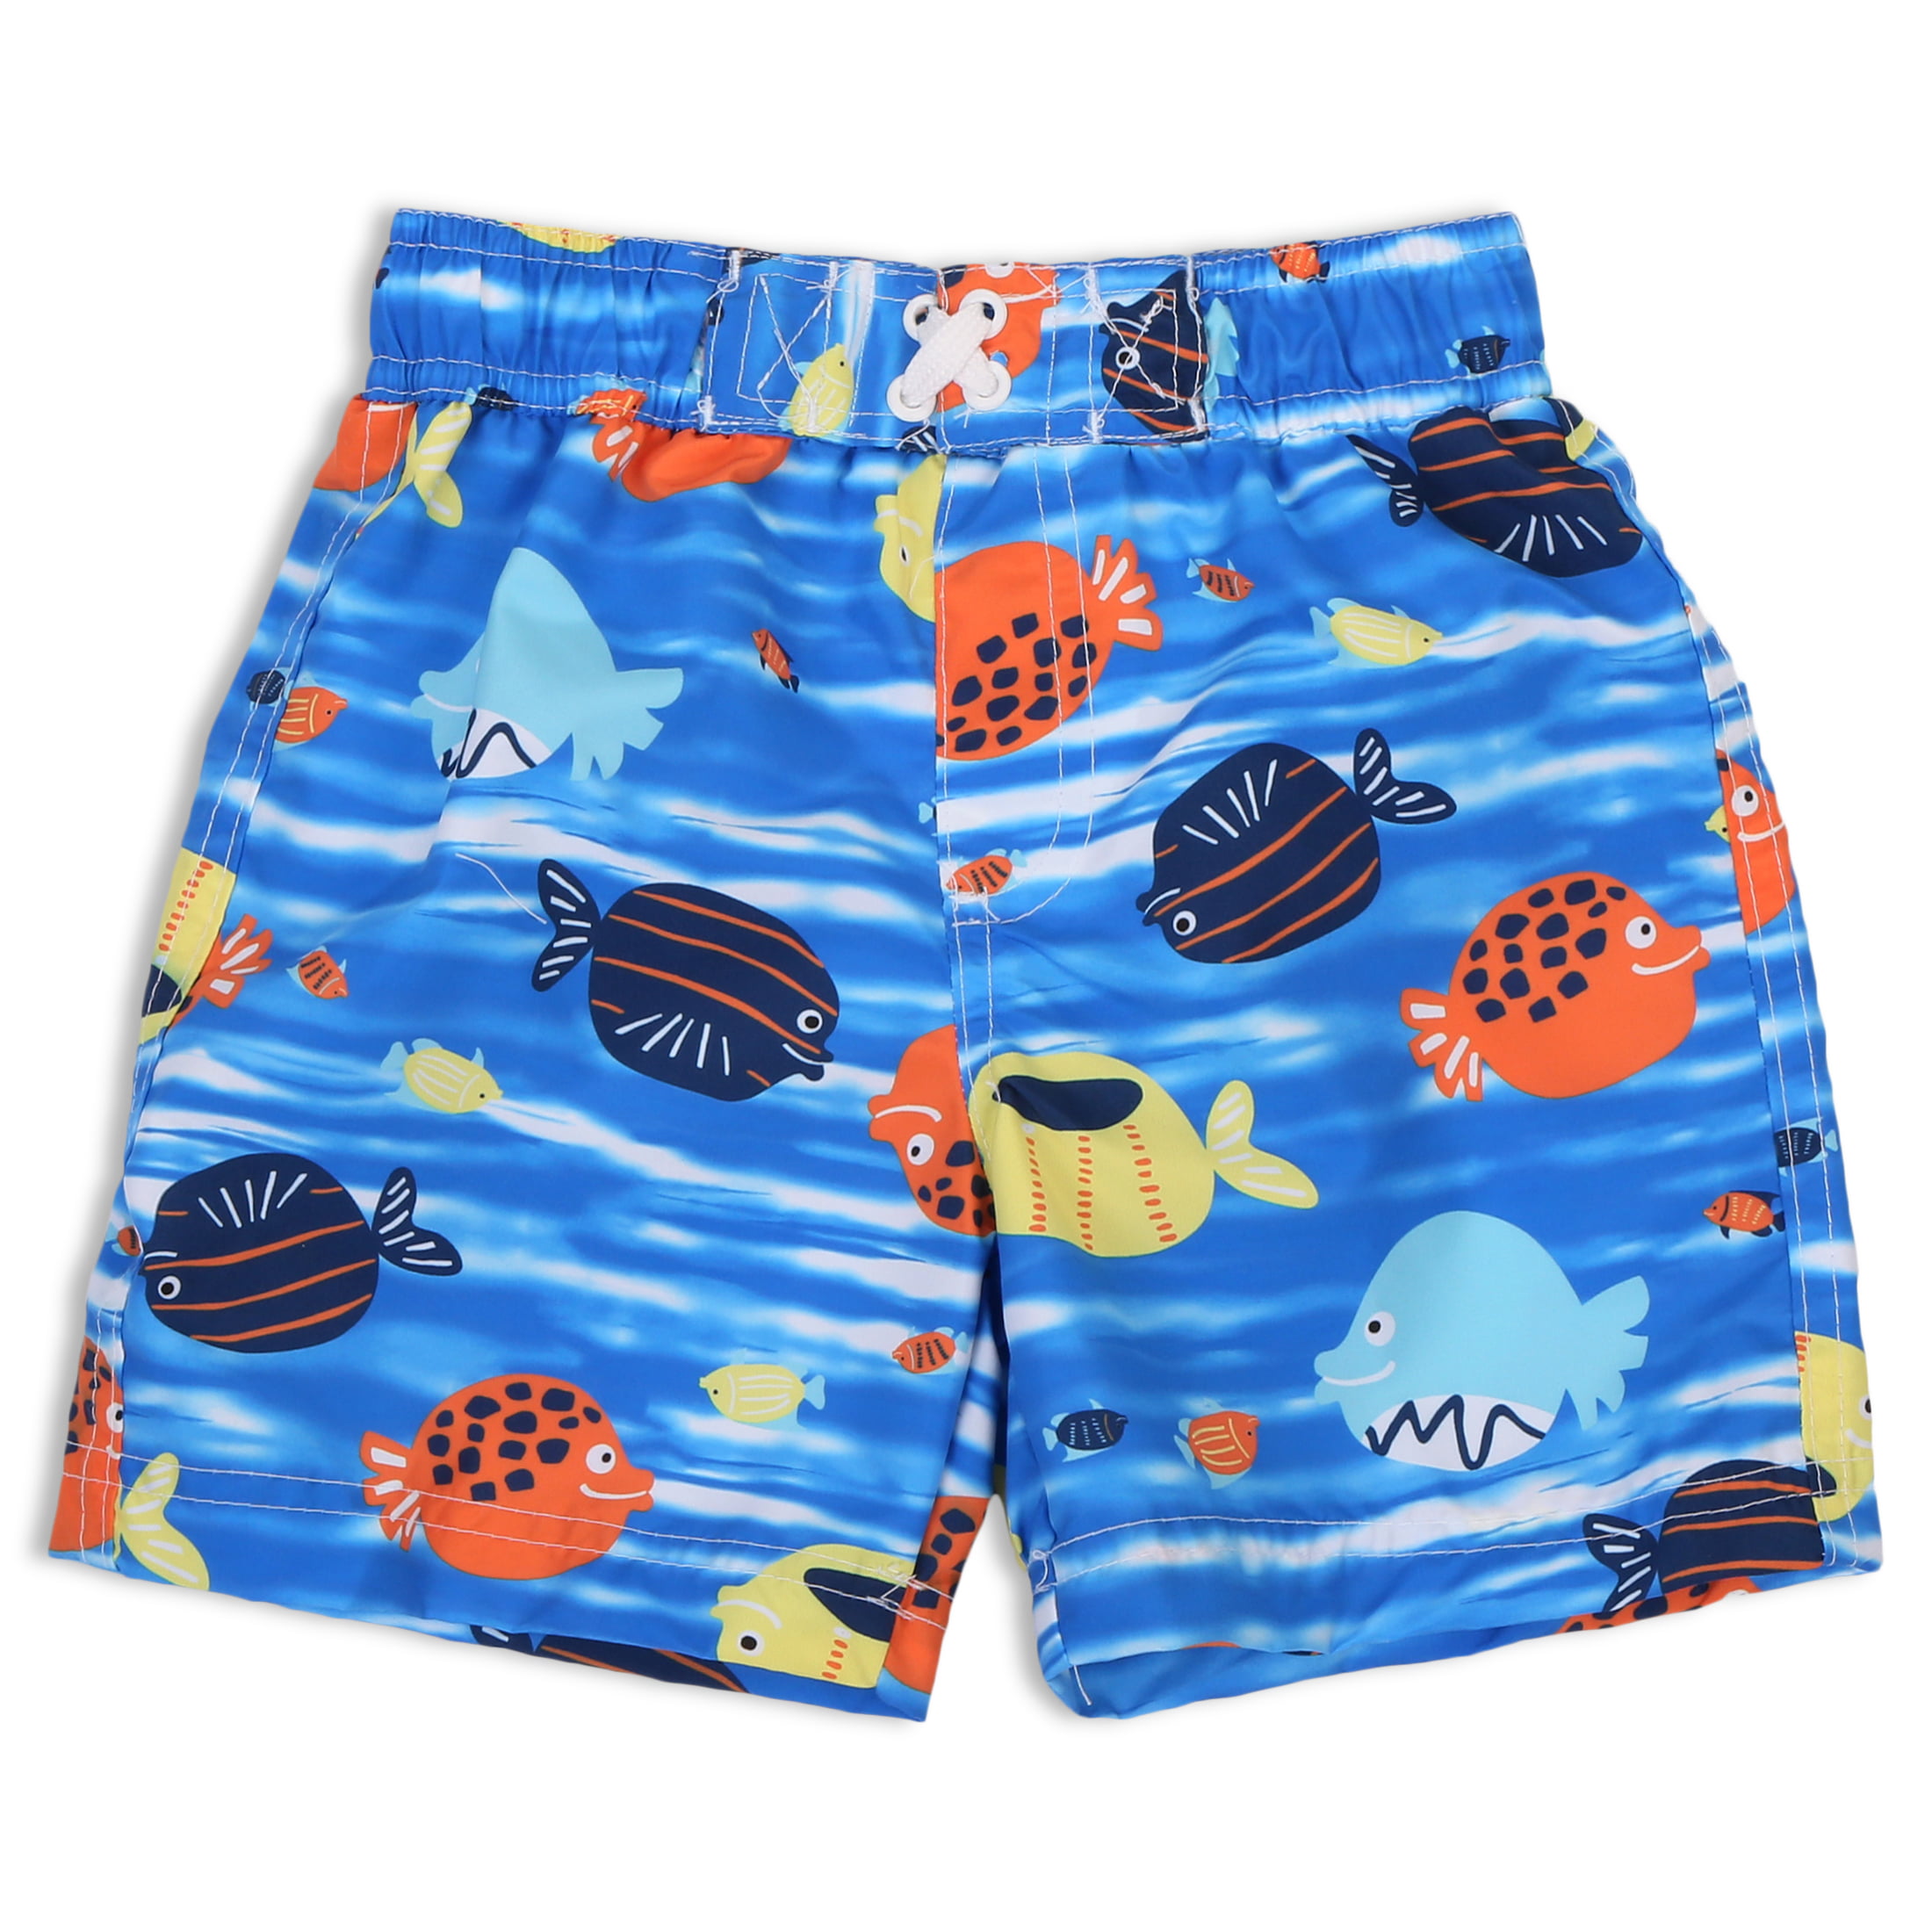 Ina Fers stranger-things-season-3-poster-4 Swim Trunks Quick Dry Short Board Shorts for Men